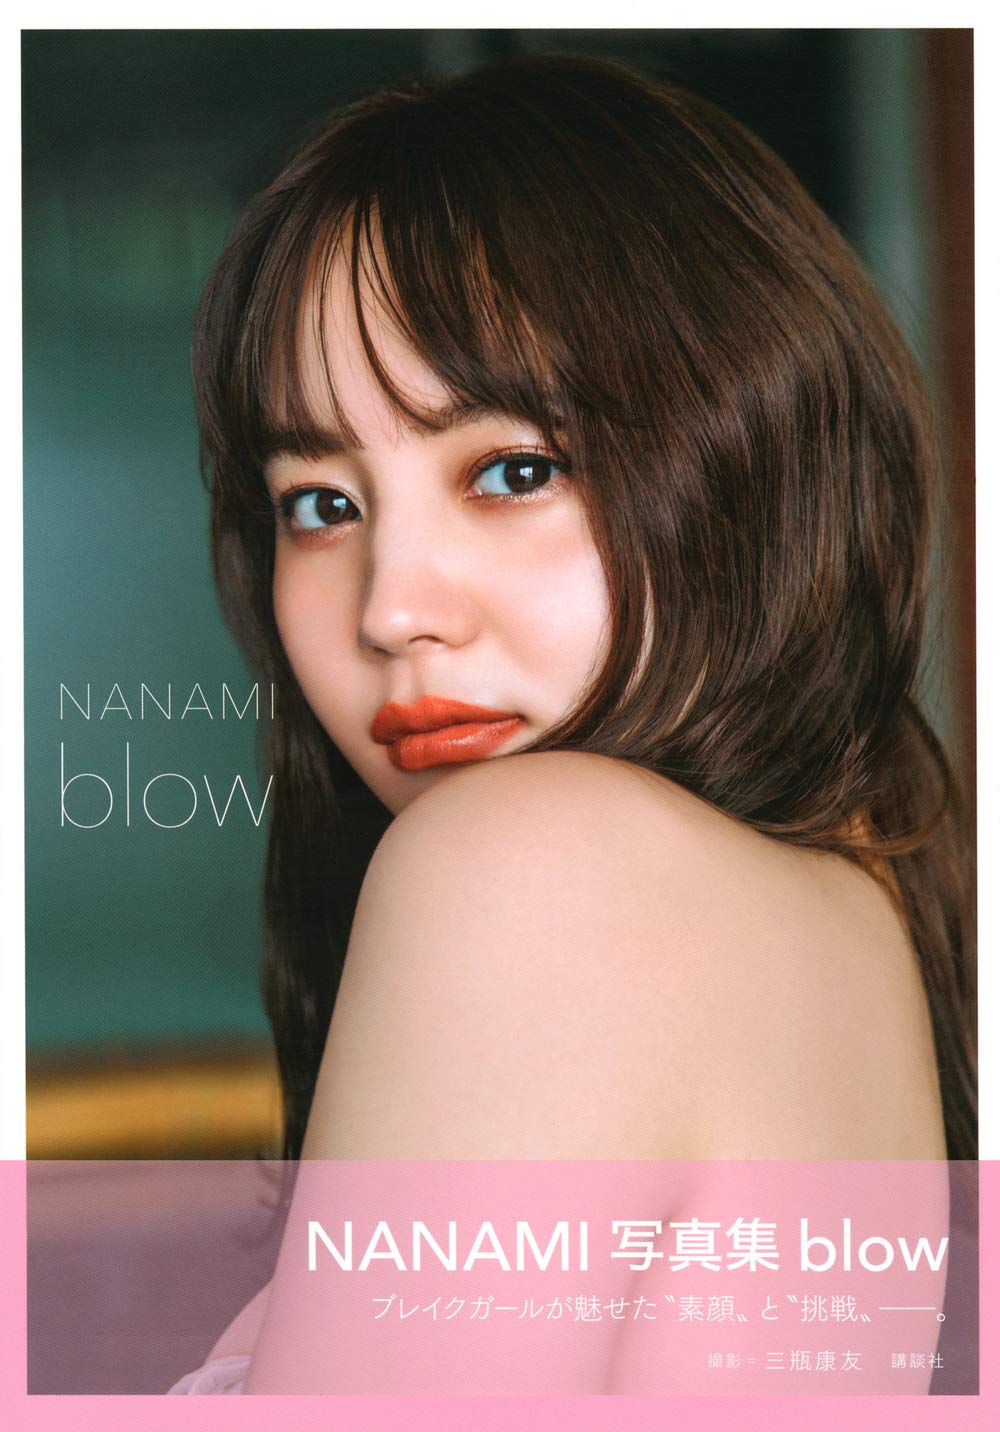 사인본★ 나나미 사진집 - 블로우 blow